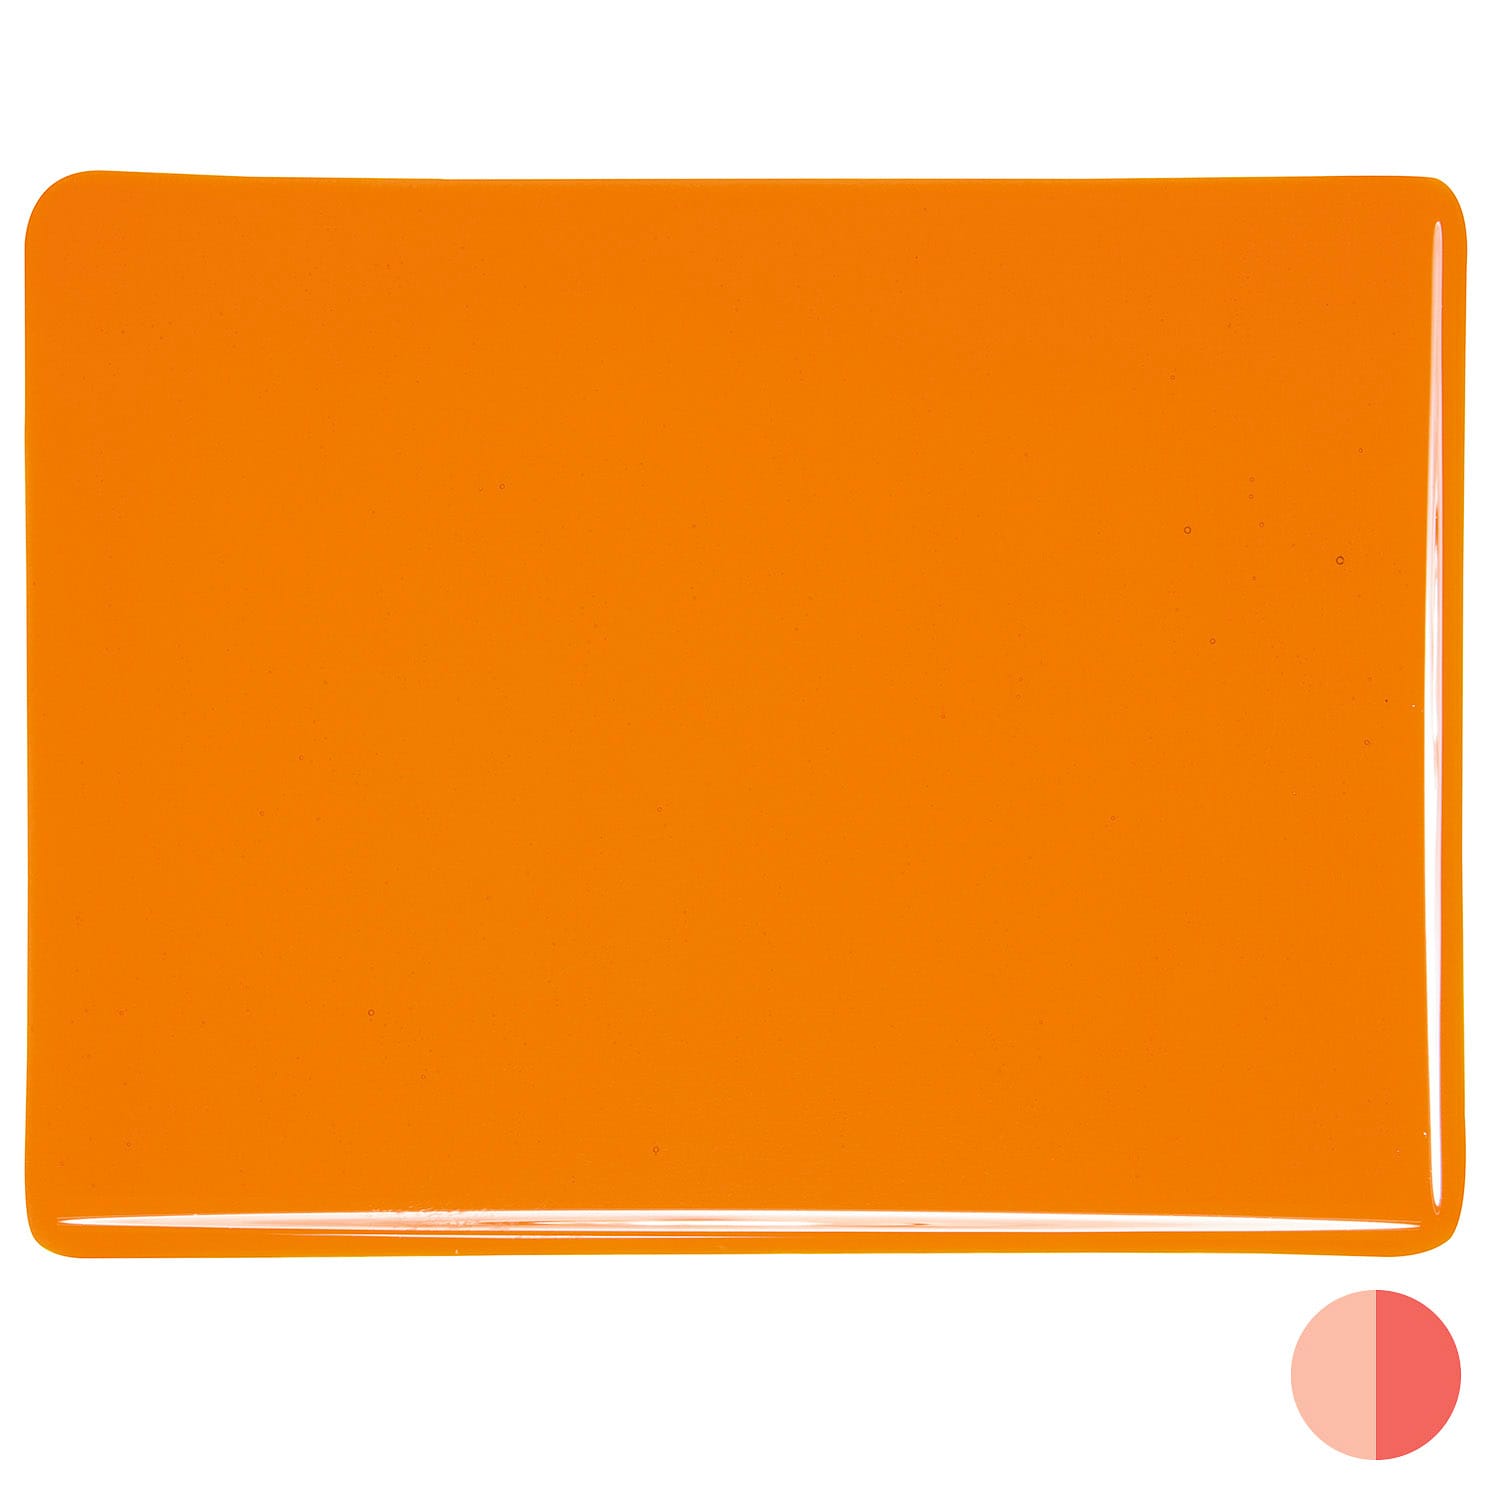 Bullseye COE90 Fusing Glass 001025 Light Orange Handy Sheet